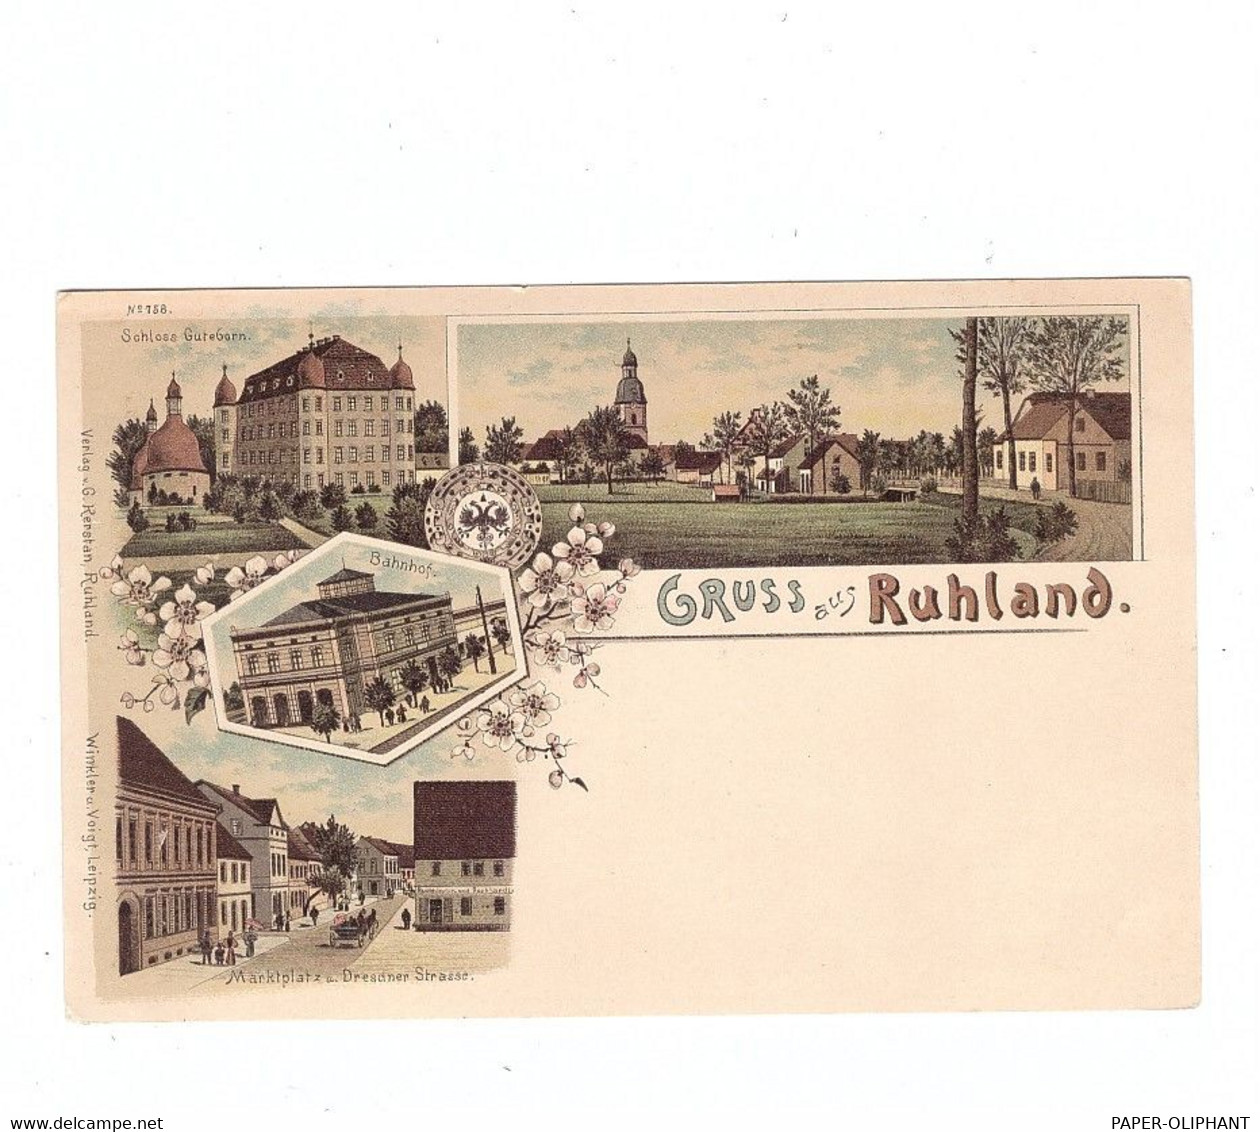 0-7800 RUHLAND, Lithographie, Bahnhof, Marktplatz & Dresdner Strasse, Schloss Guteborn, Dorfansicht - Ruhland